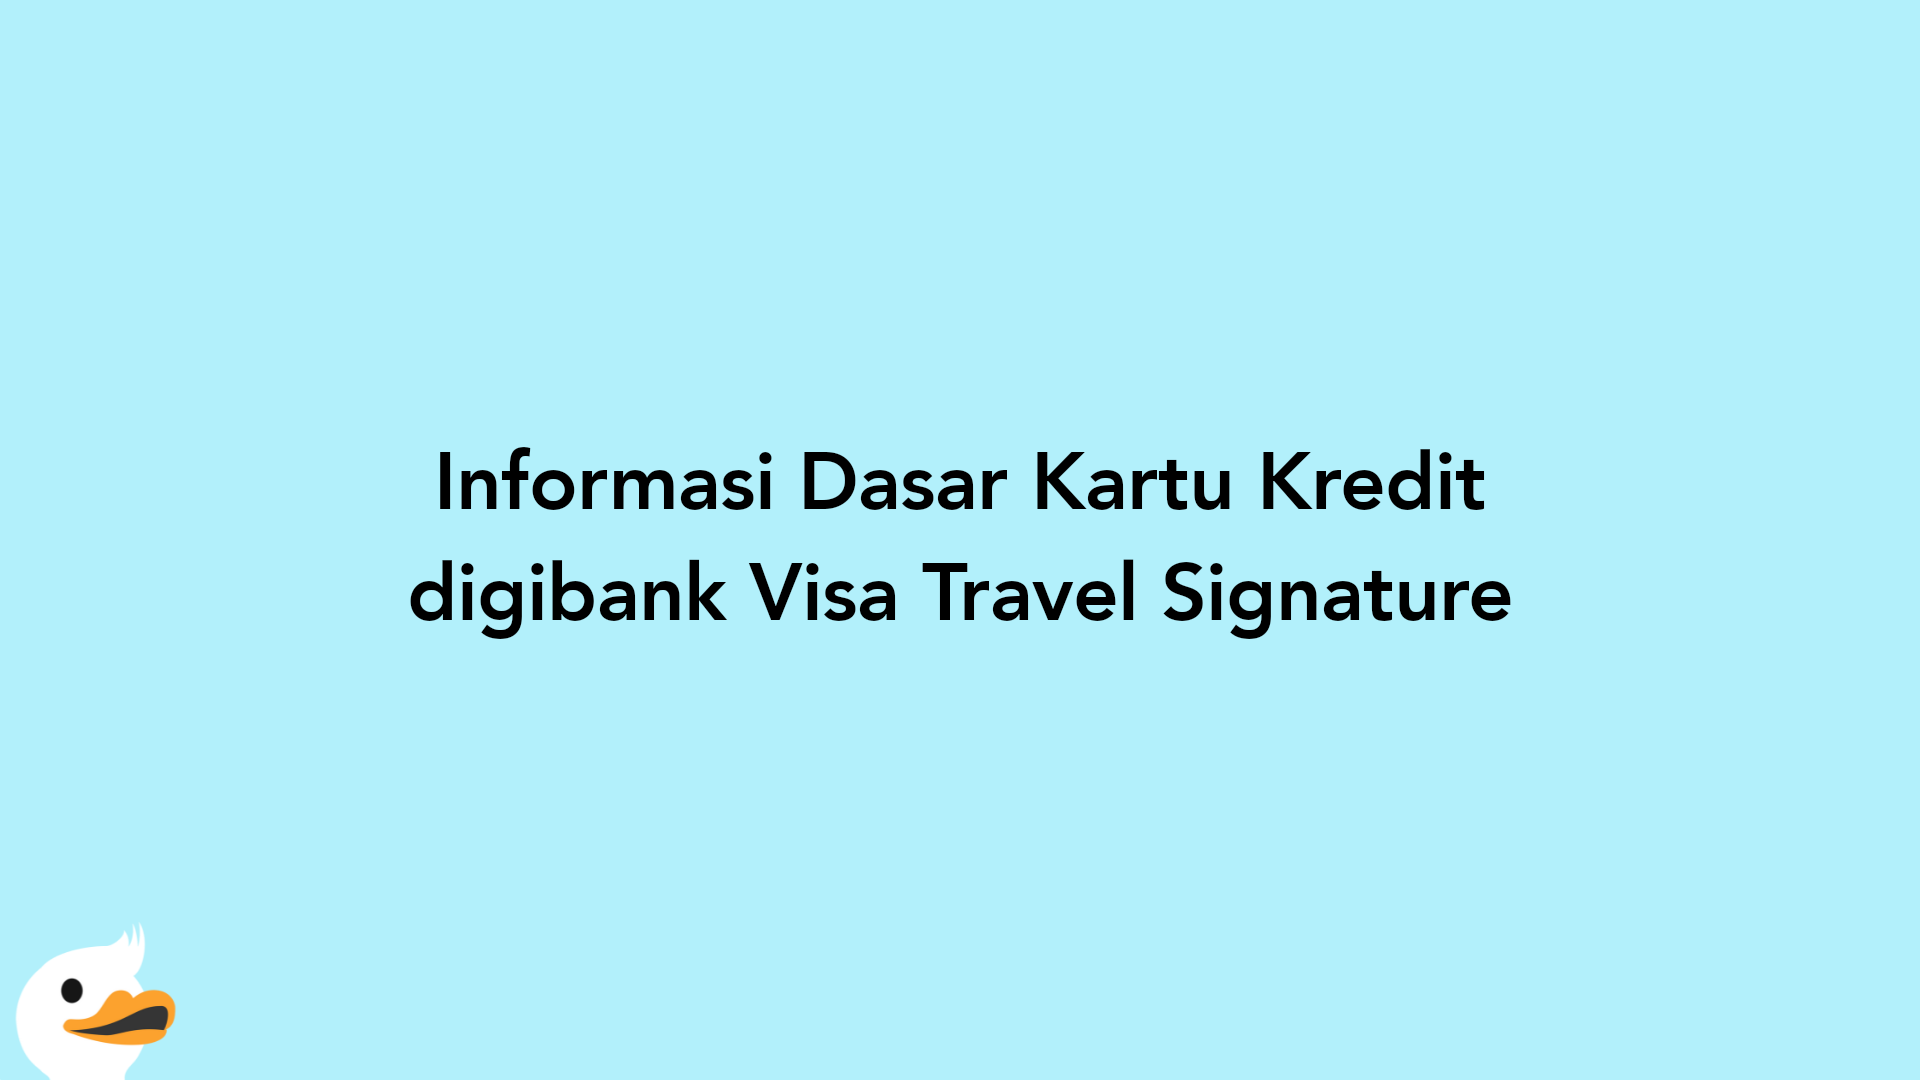 Informasi Dasar Kartu Kredit digibank Visa Travel Signature